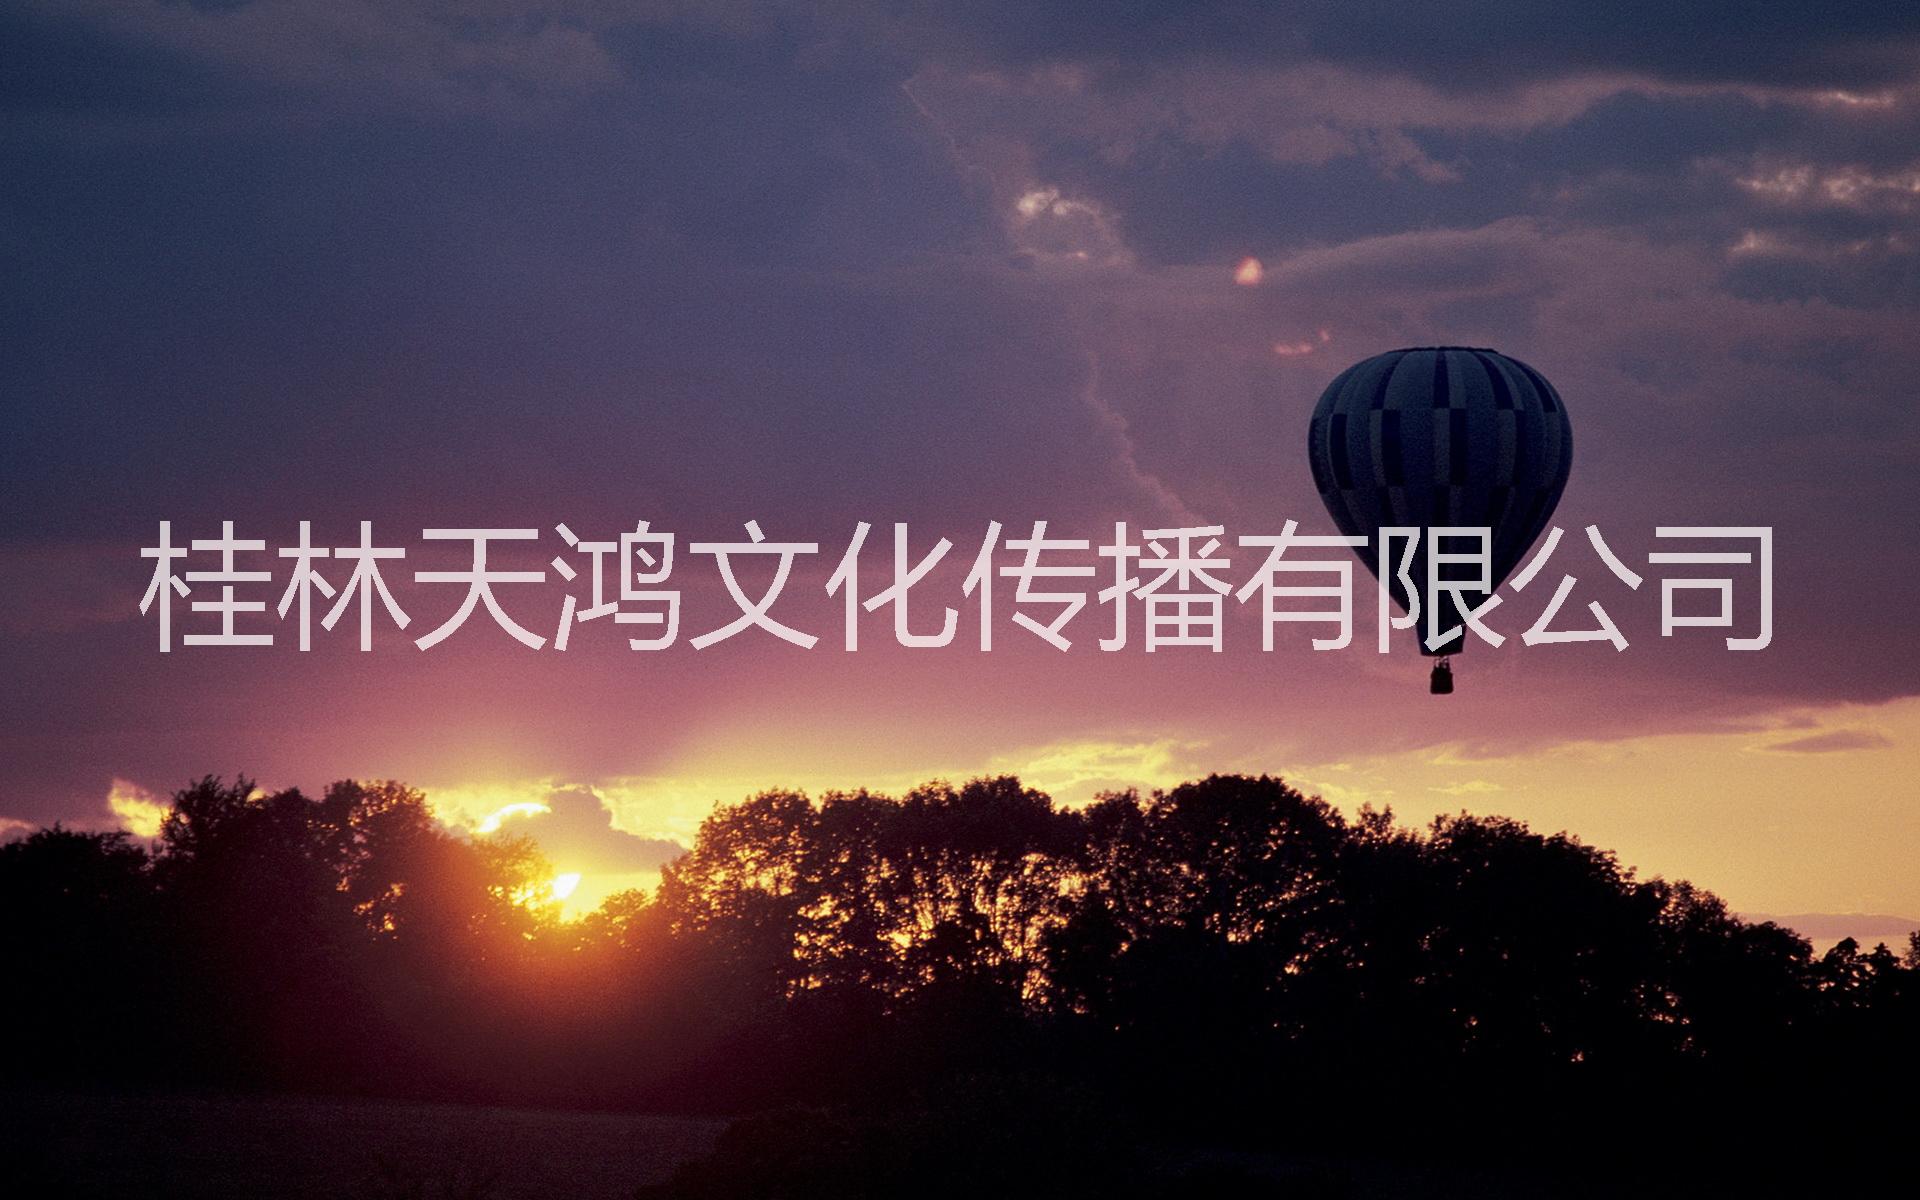 桂林市贵州安顺热气球广告租赁出租厂家贵州安顺热气球广告租赁出租,铜仁热气球广告,毕节载人热气球出租